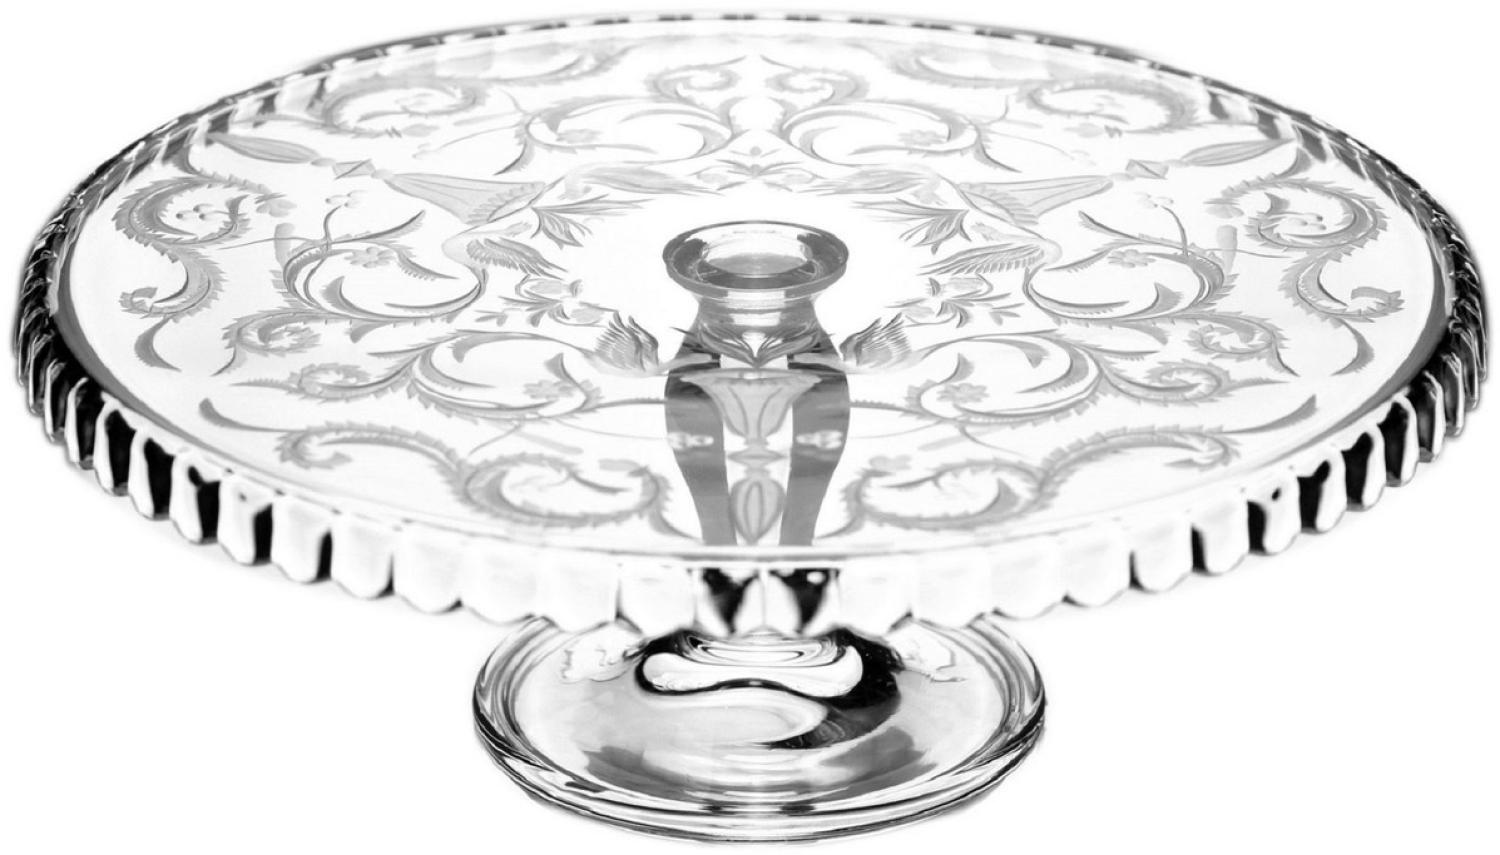 Casa Padrino Luxus Kuchenteller Silber Ø 32 x H. 12 cm - Handgefertigte und handgravierte Glas Kuchenplatte - Hotel & Restaurant Accessoires - Luxus Qualität Bild 1